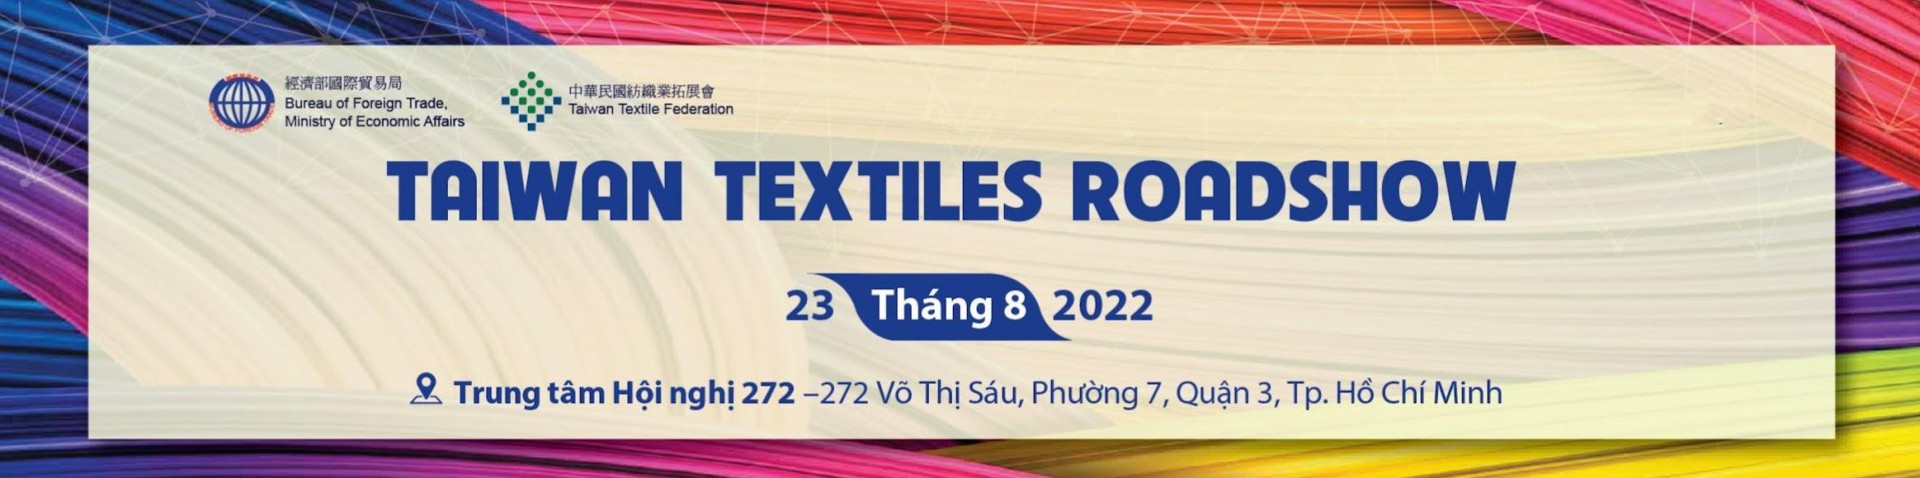 Taiwan Textiles Roadshow 2022 - Triển lãm Giao thương Dệt May Đài Loan tại TP. Hồ Chí Minh